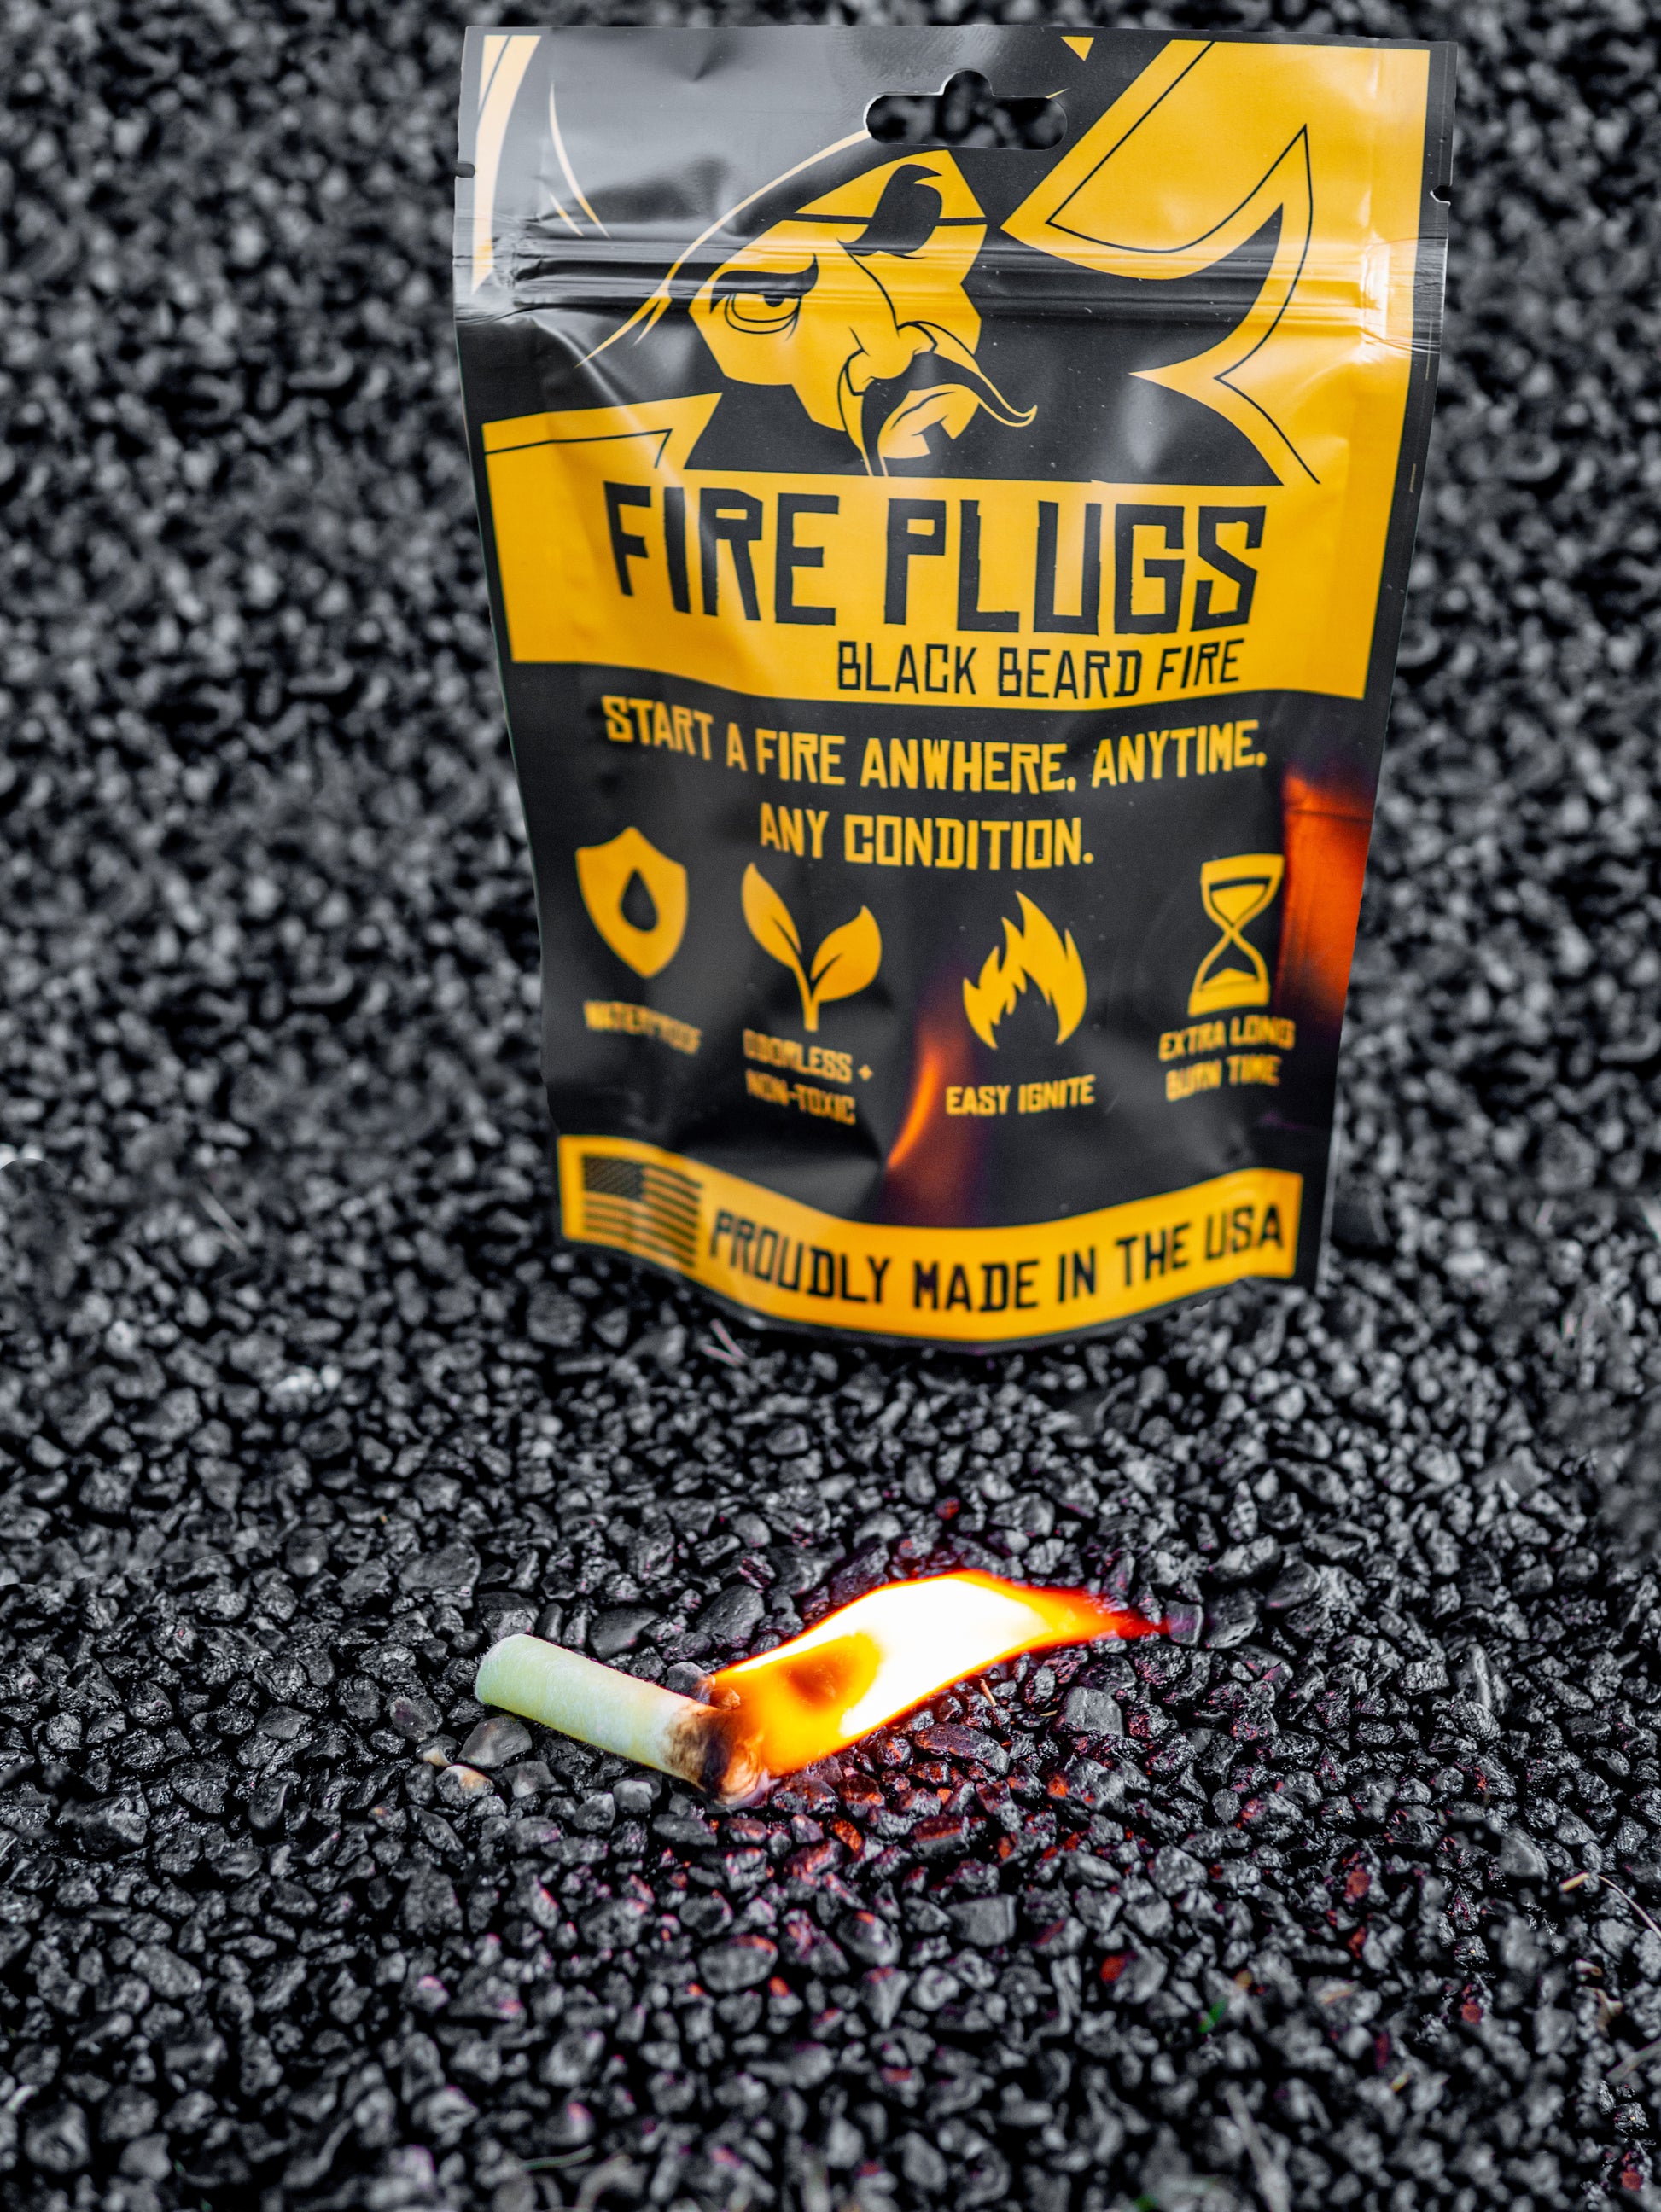 Black Beard Essential Fire Starter Kit Fire Plugs Fire Starter Tinder